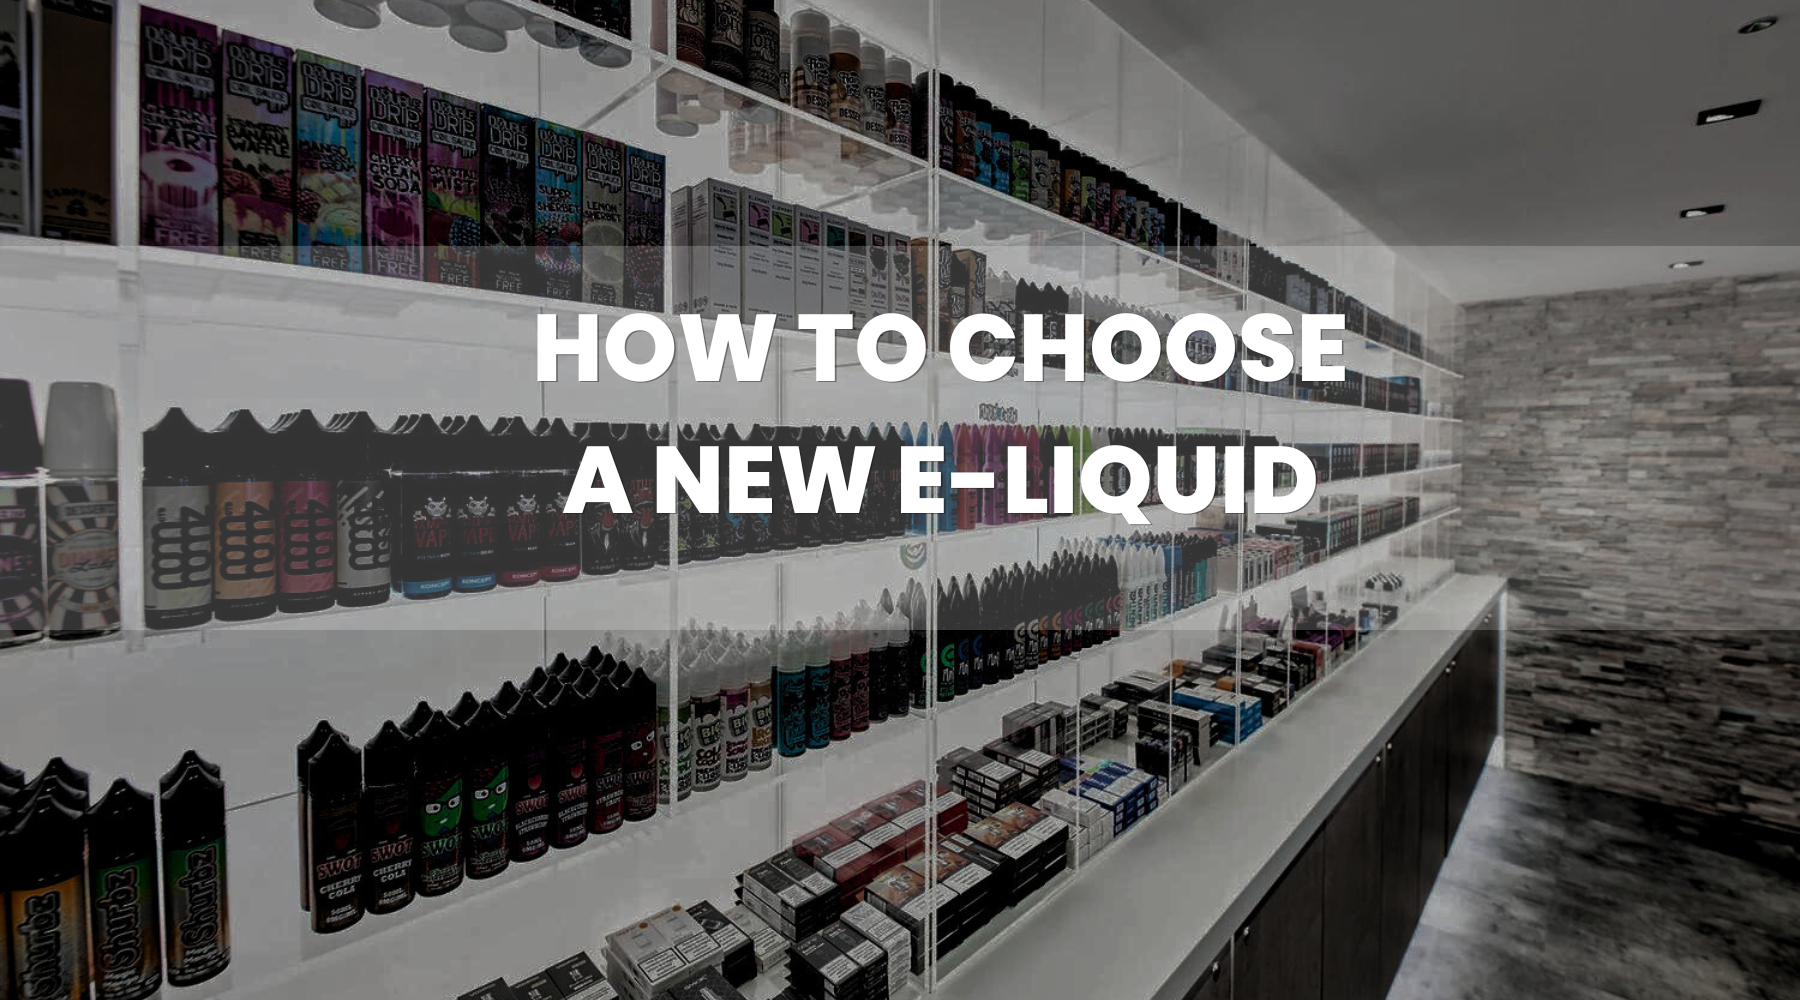 How do you Choose a New E-Liquid?